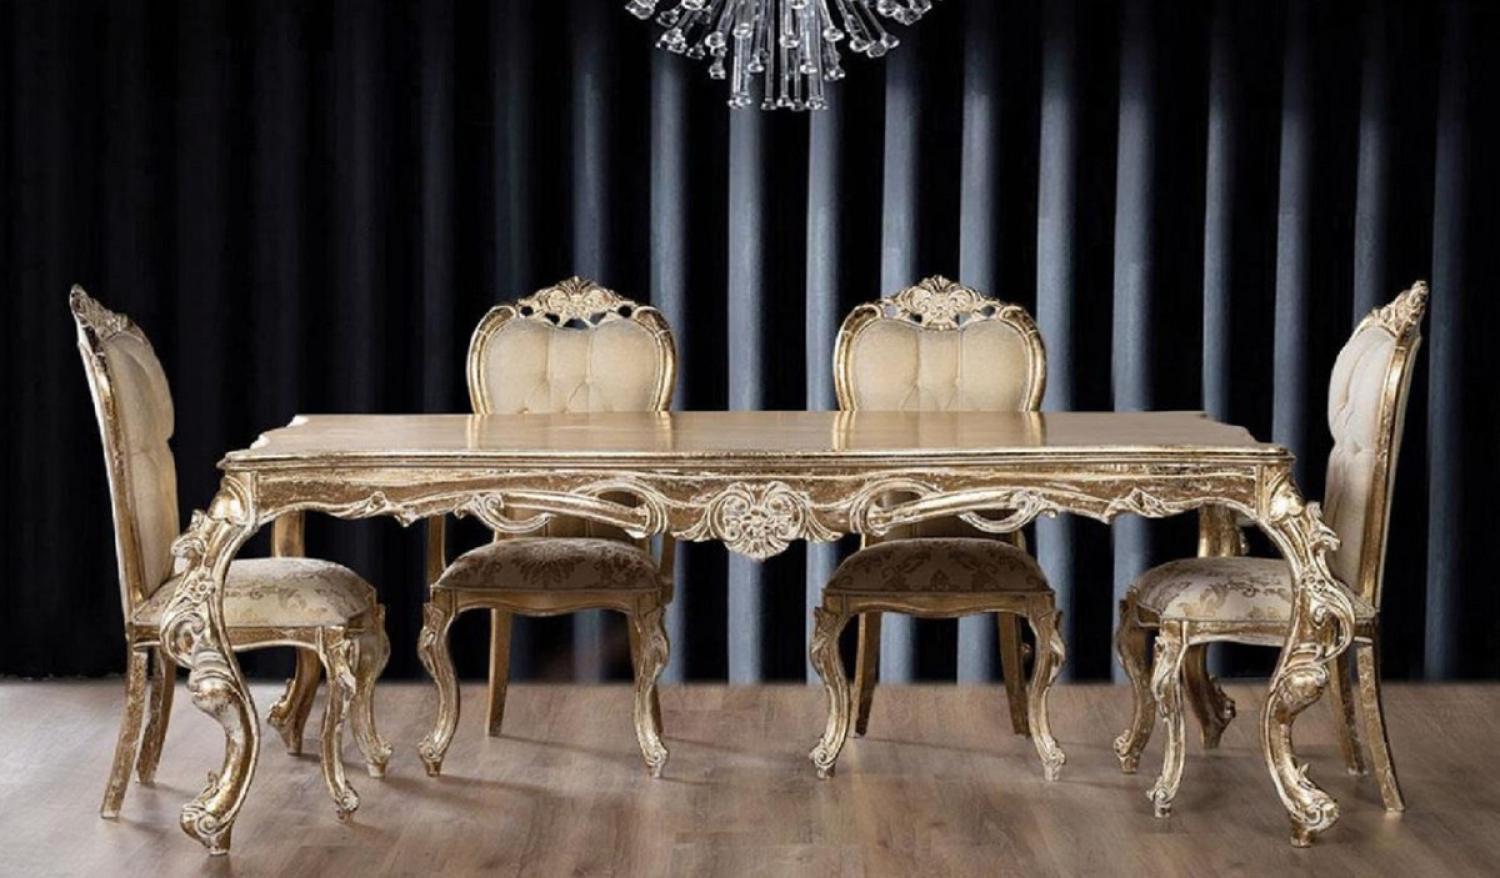 Casa Padrino Luxus Barock Esszimmer Set Beige / Gold / Antik Gold - 1 Barock Esstisch & 6 Barock Esszimmerstühle - Esszimmer Möbel im Barockstil - Edel & Prunkvoll Bild 1